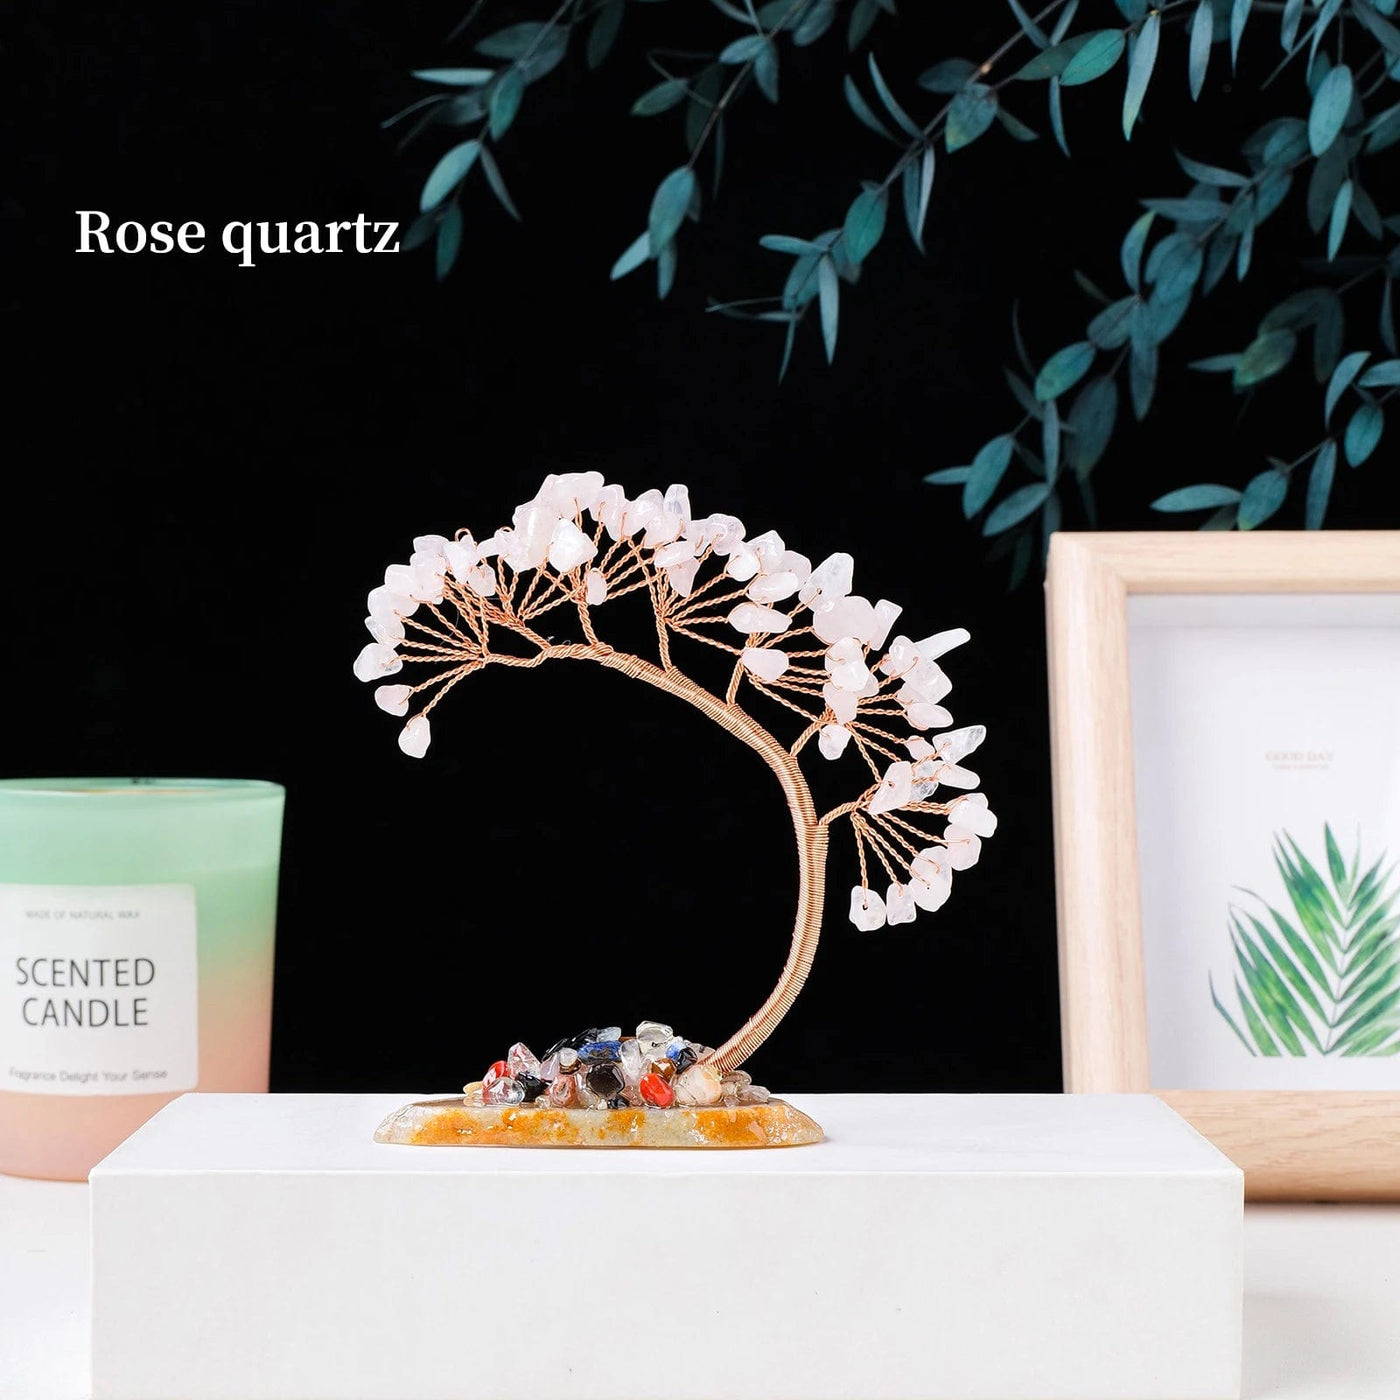 wickedafstore Rose quartz / 1pc Natural Crystal Quartz Fortune Tree